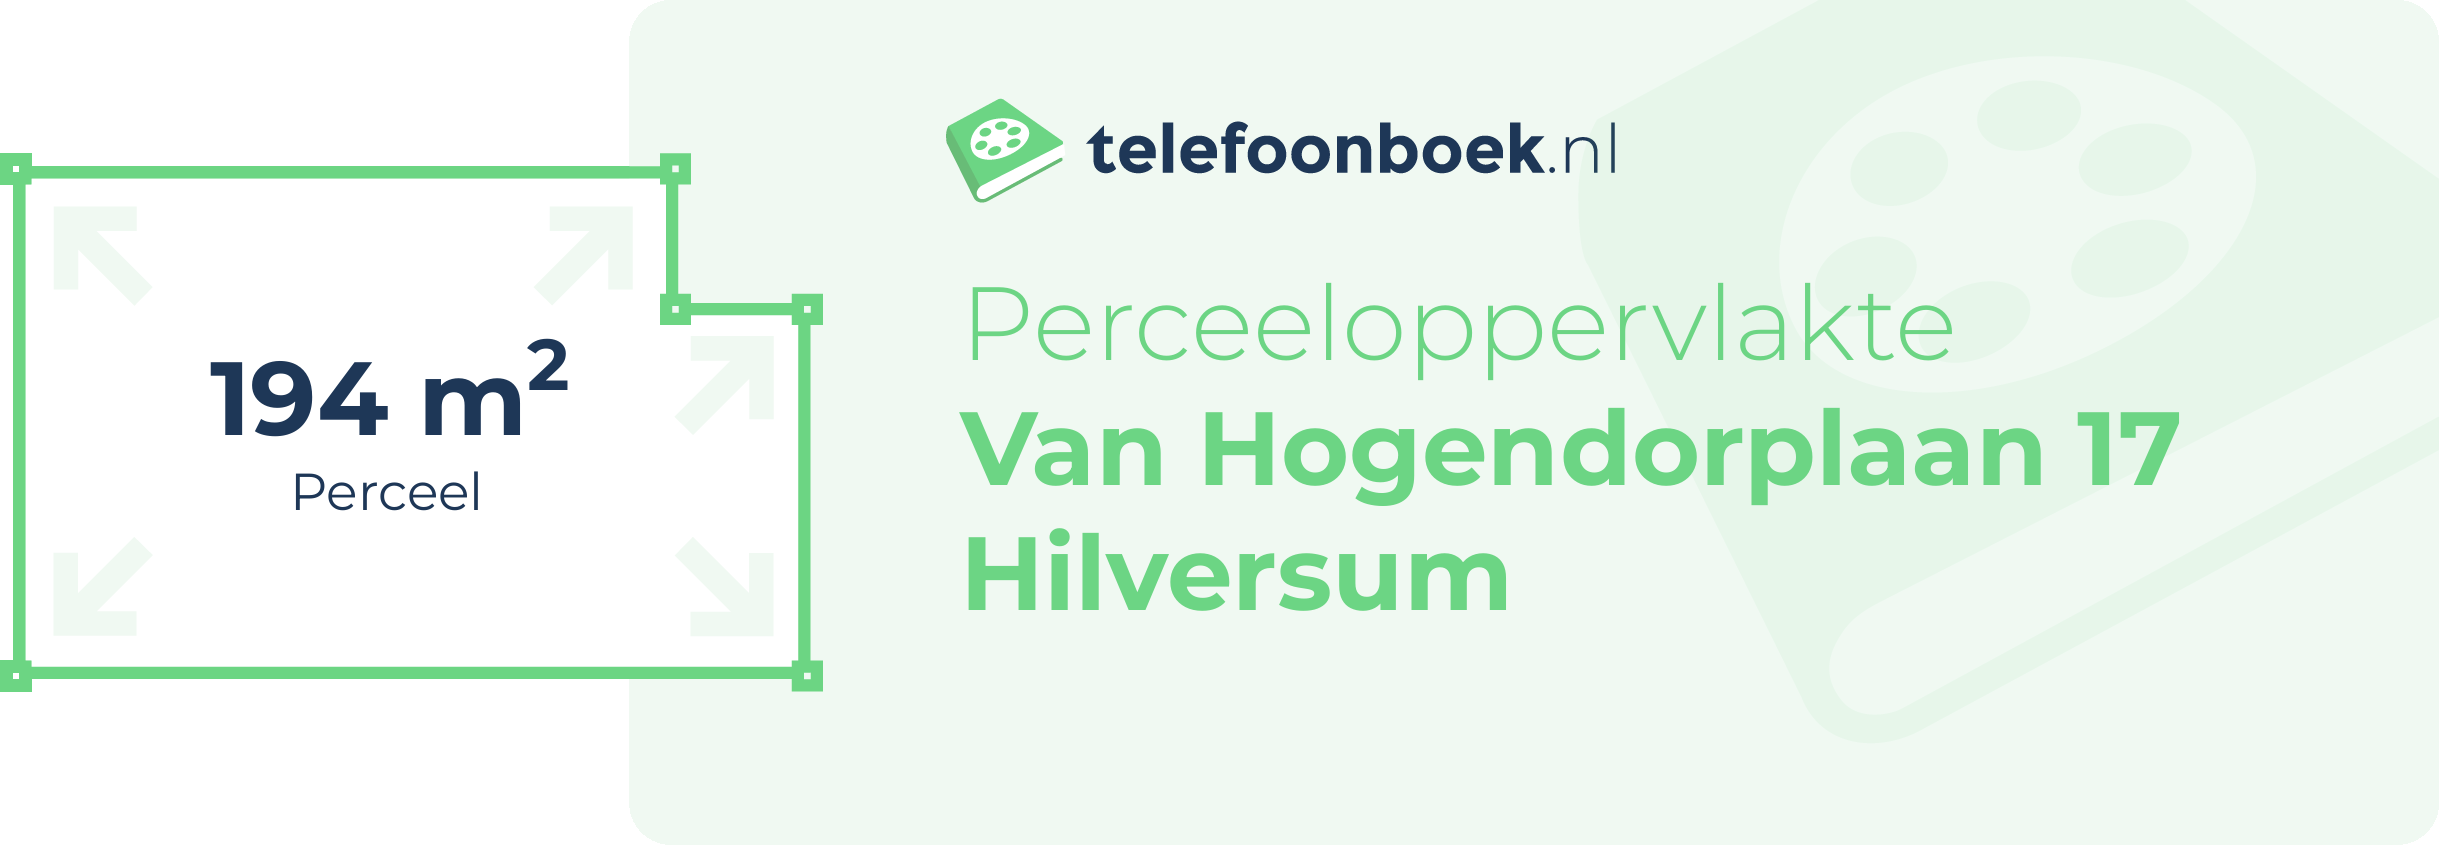 Perceeloppervlakte Van Hogendorplaan 17 Hilversum